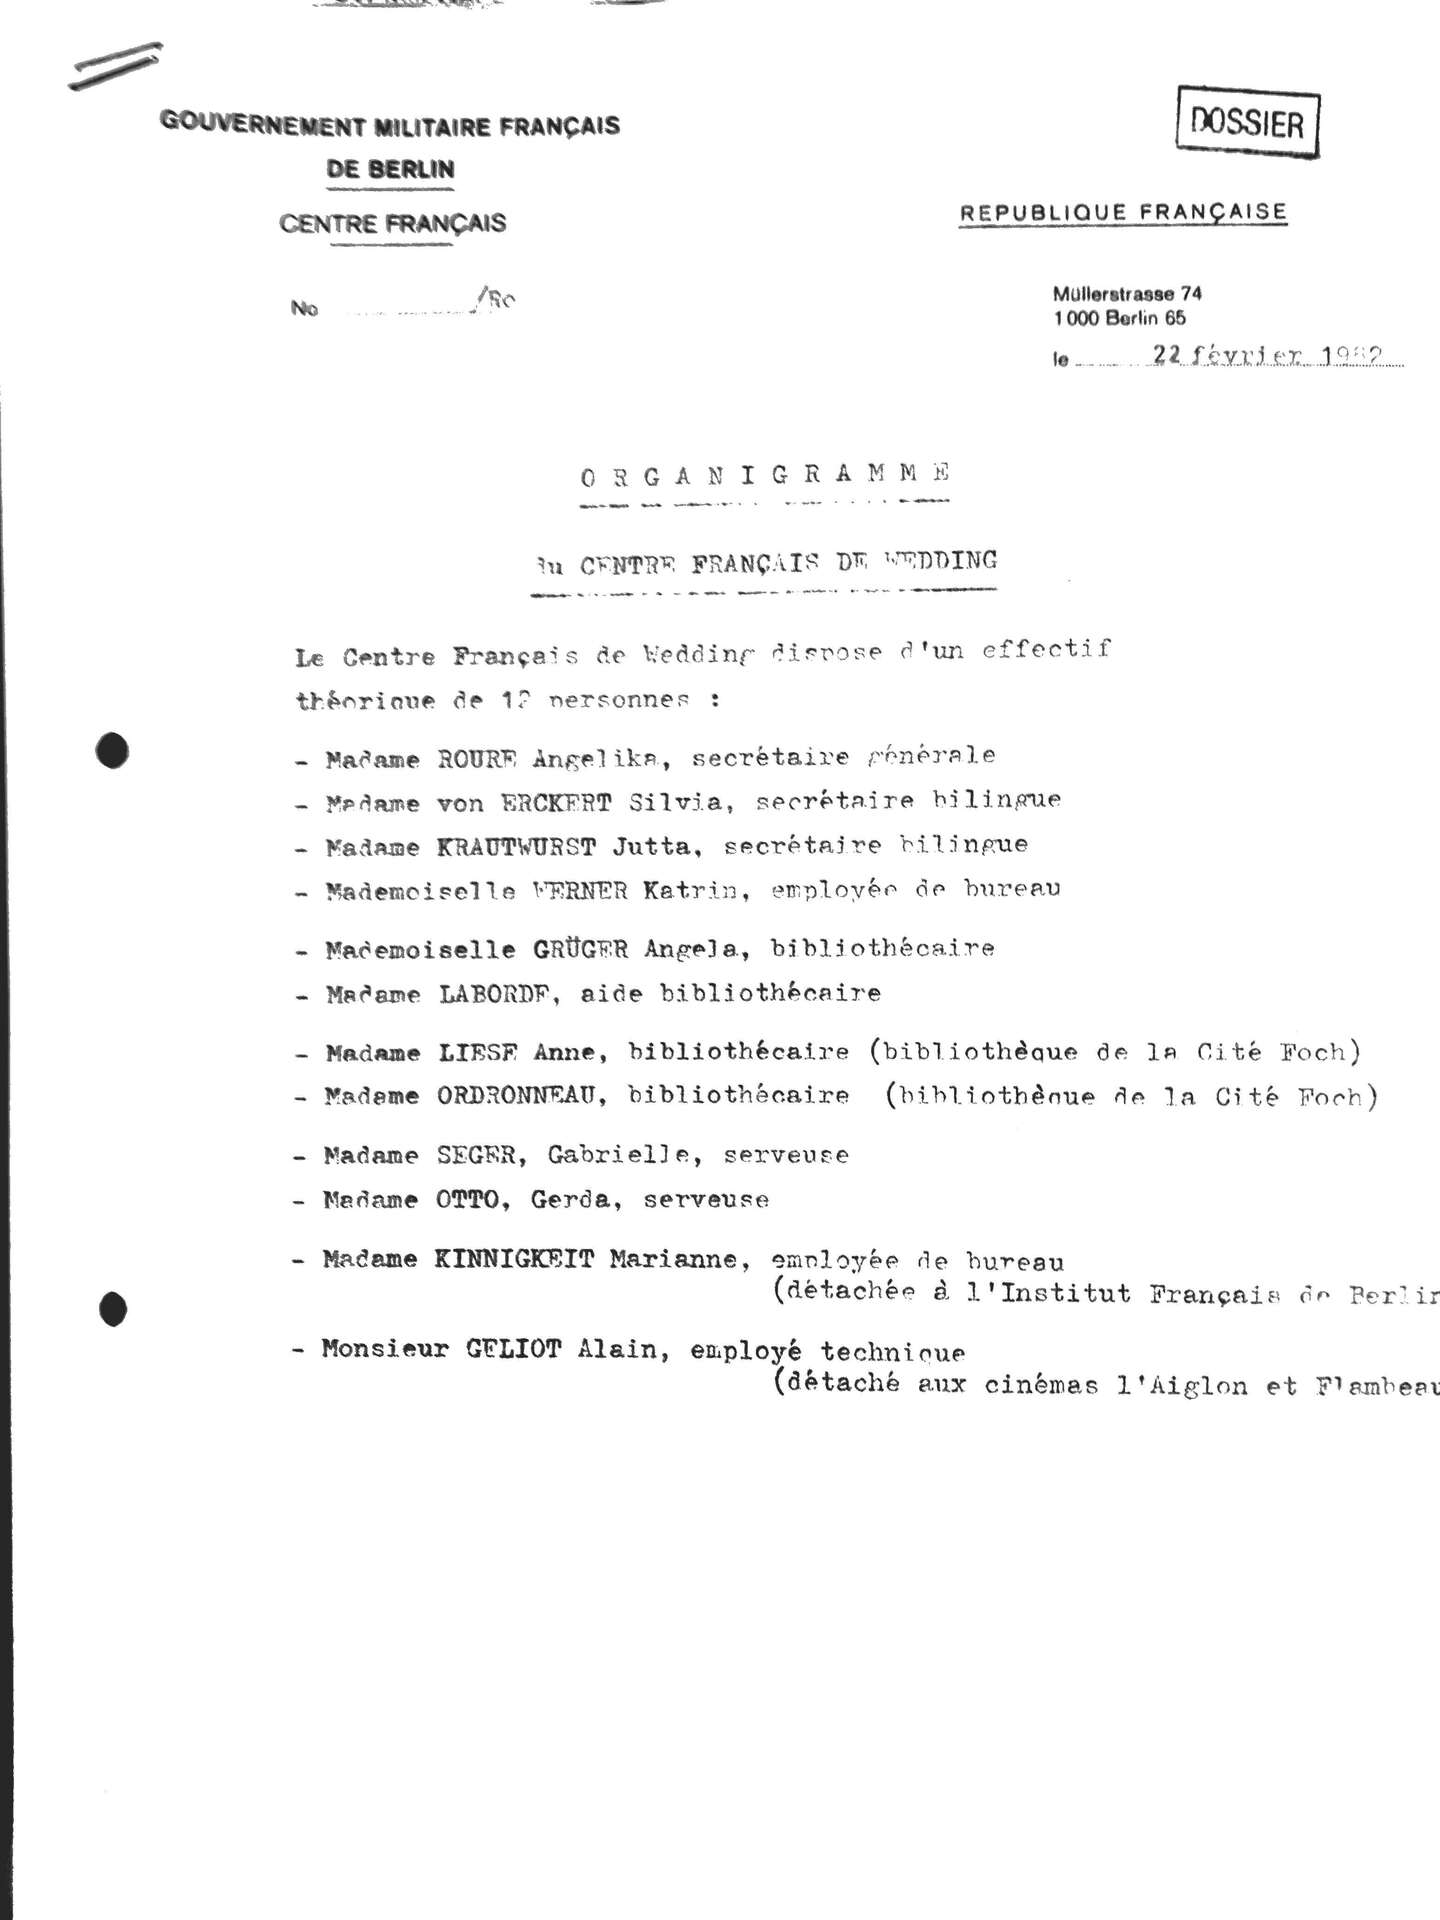 GMFB-3550 Organigramme du centre français de Wedding 22-02-1982_Seite_1.jpg